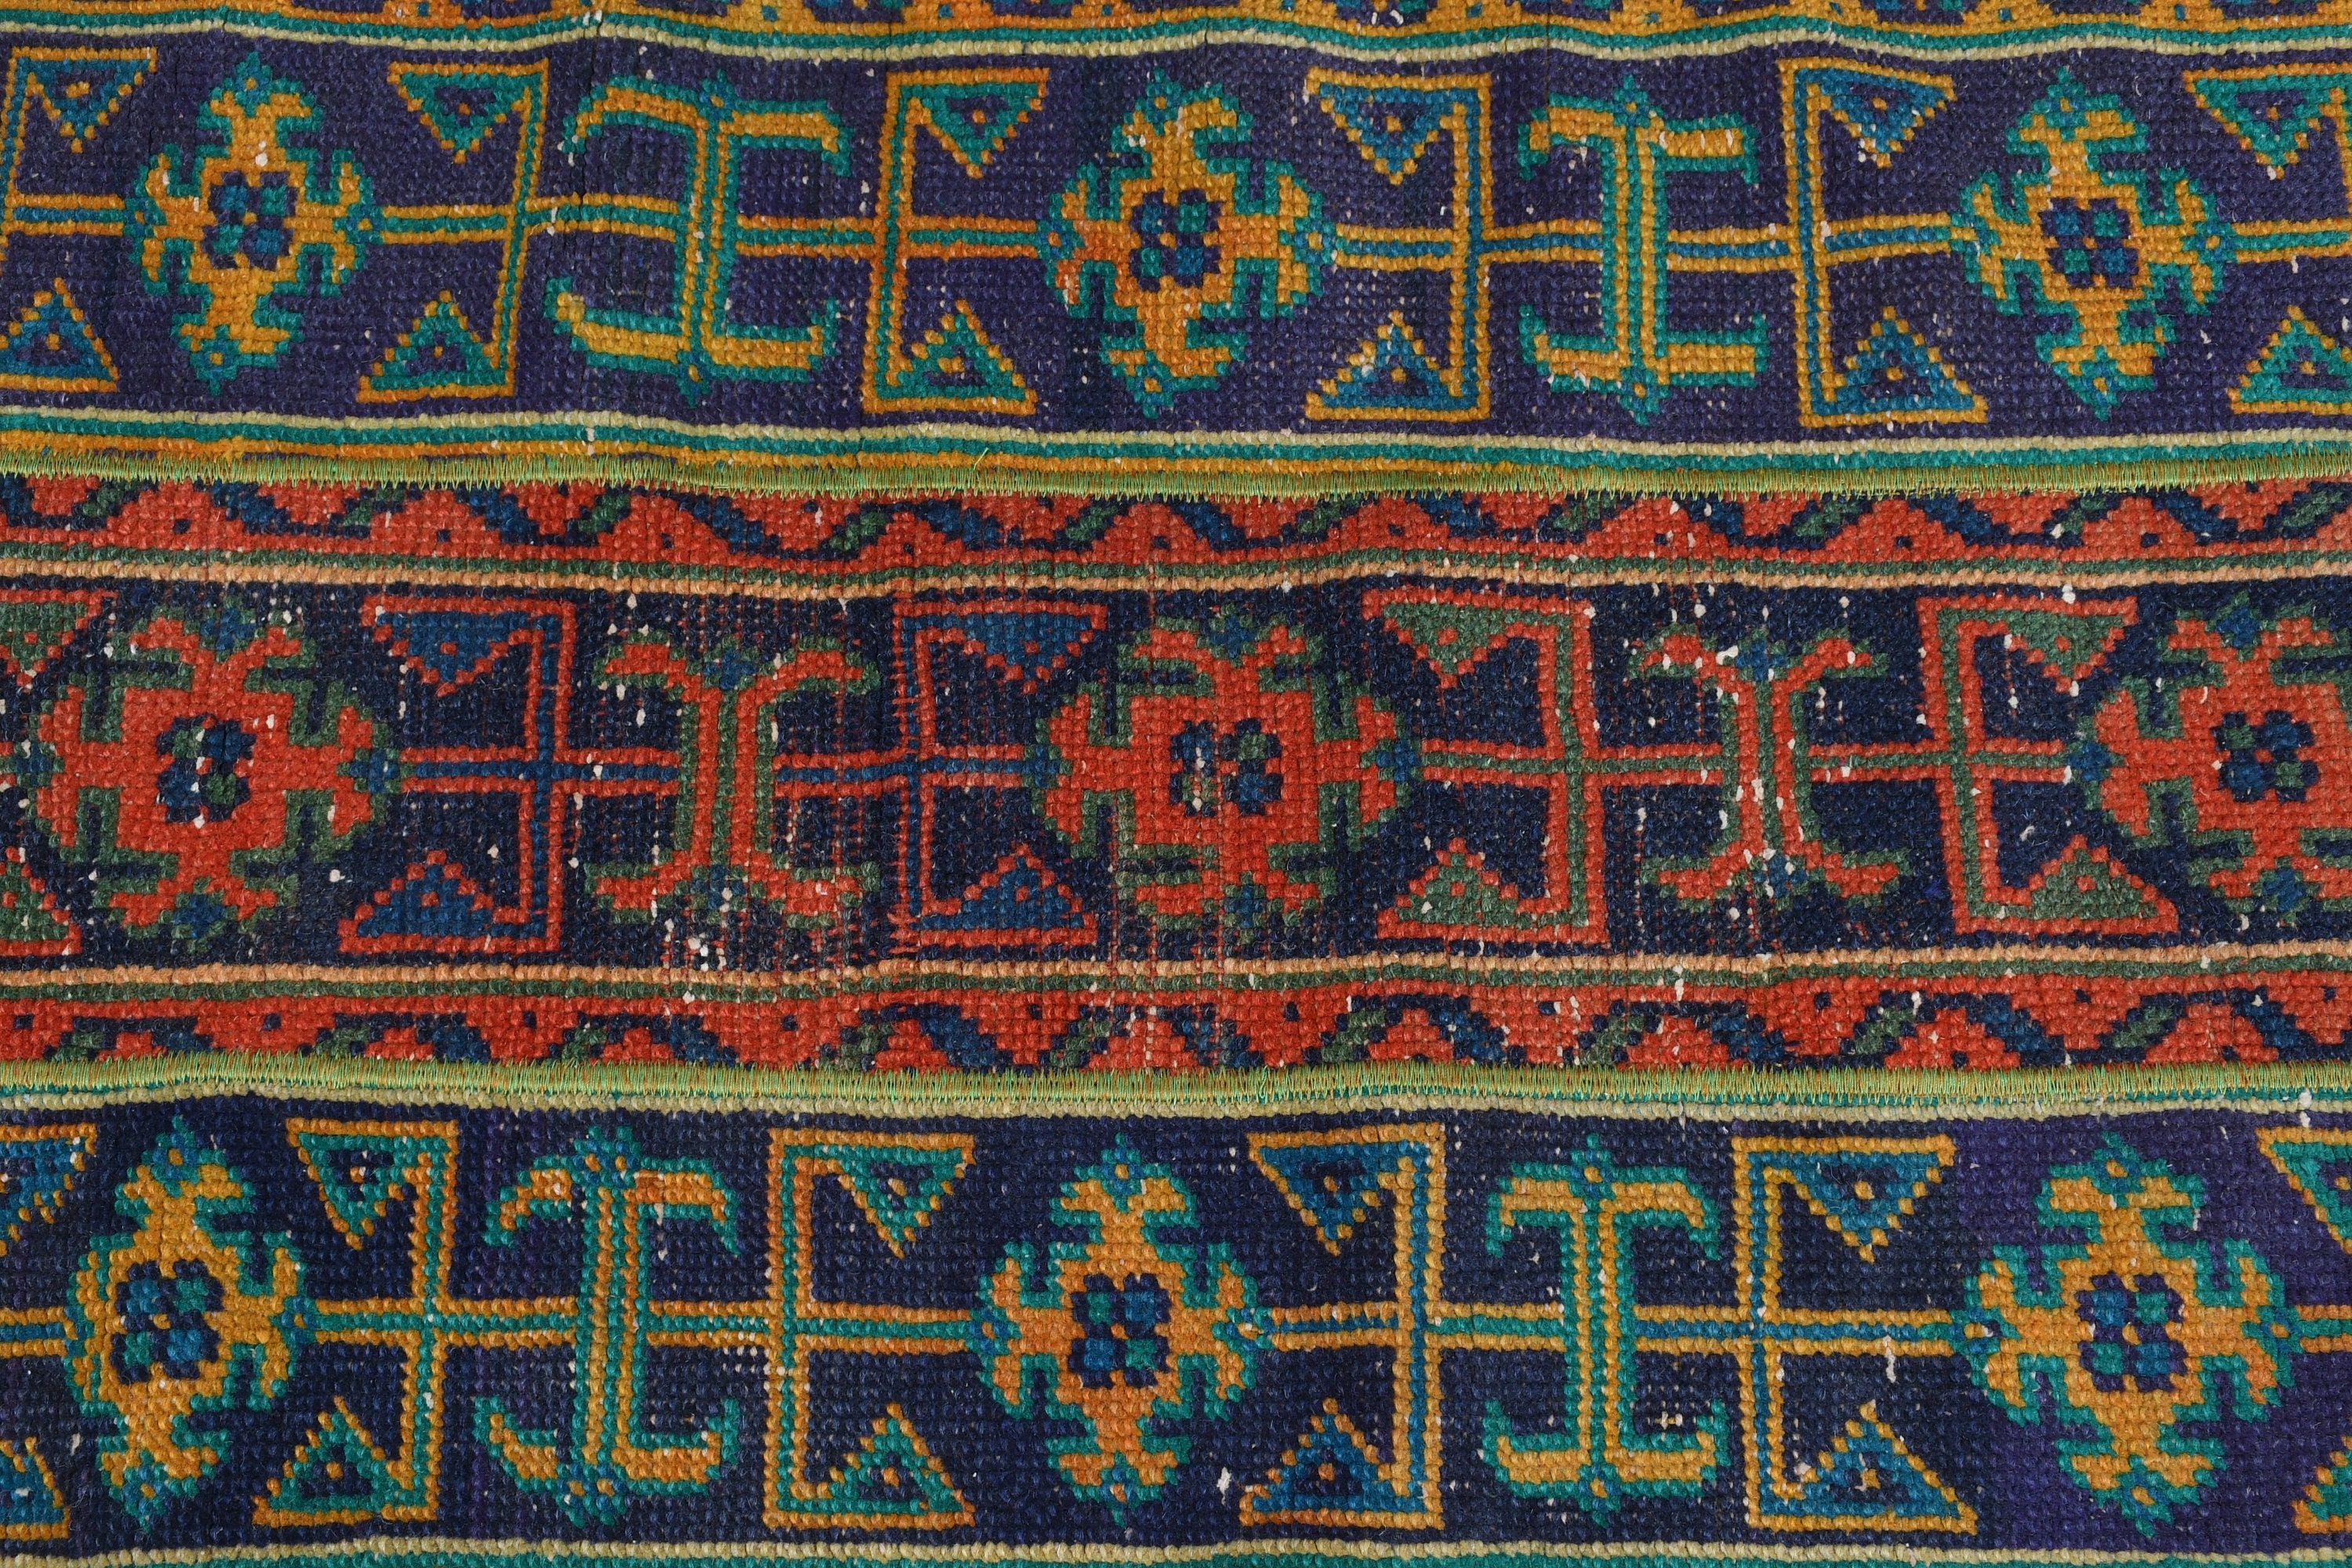 Oriental Rug, Rugs for Door Mat, Wool Rug, Blue Moroccan Rugs, Bathroom Rug, Vintage Rugs, Turkish Rug, 1.9x4.1 ft Small Rugs, Car Mat Rug